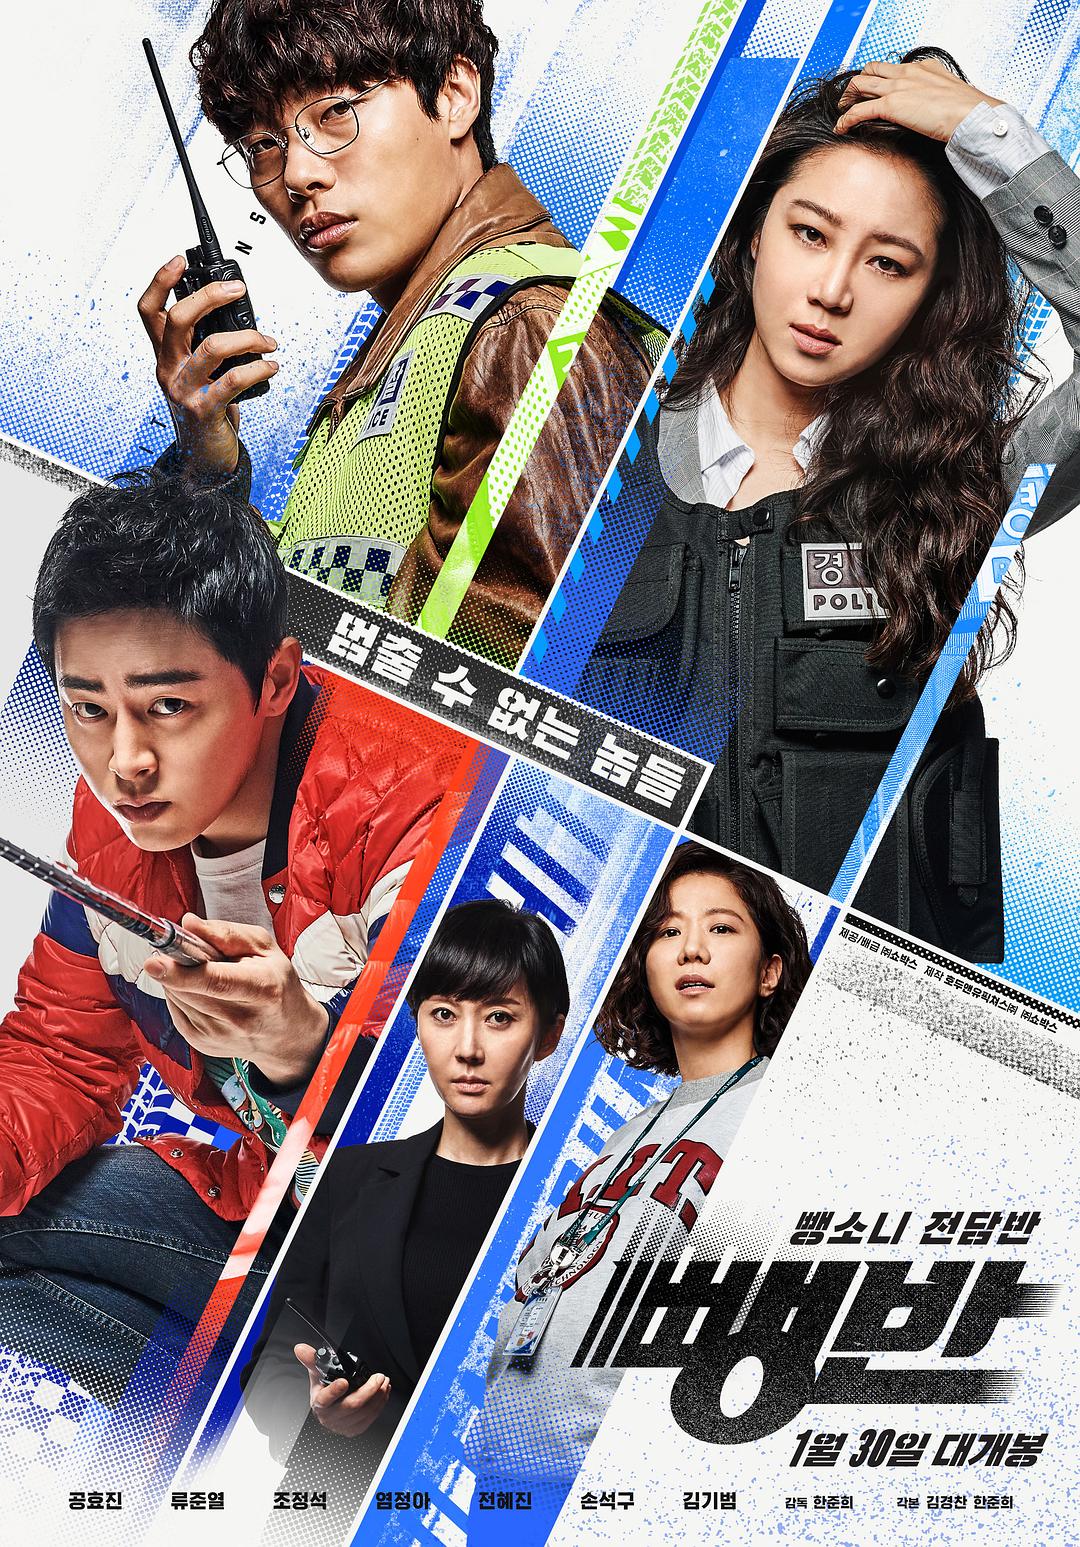 逃组 Hit-and-Run.Squad.2019.KOREAN.1080p.BluRay.AVC.DTS-HD.MA.5.1-ARiN 40.04GB-1.png